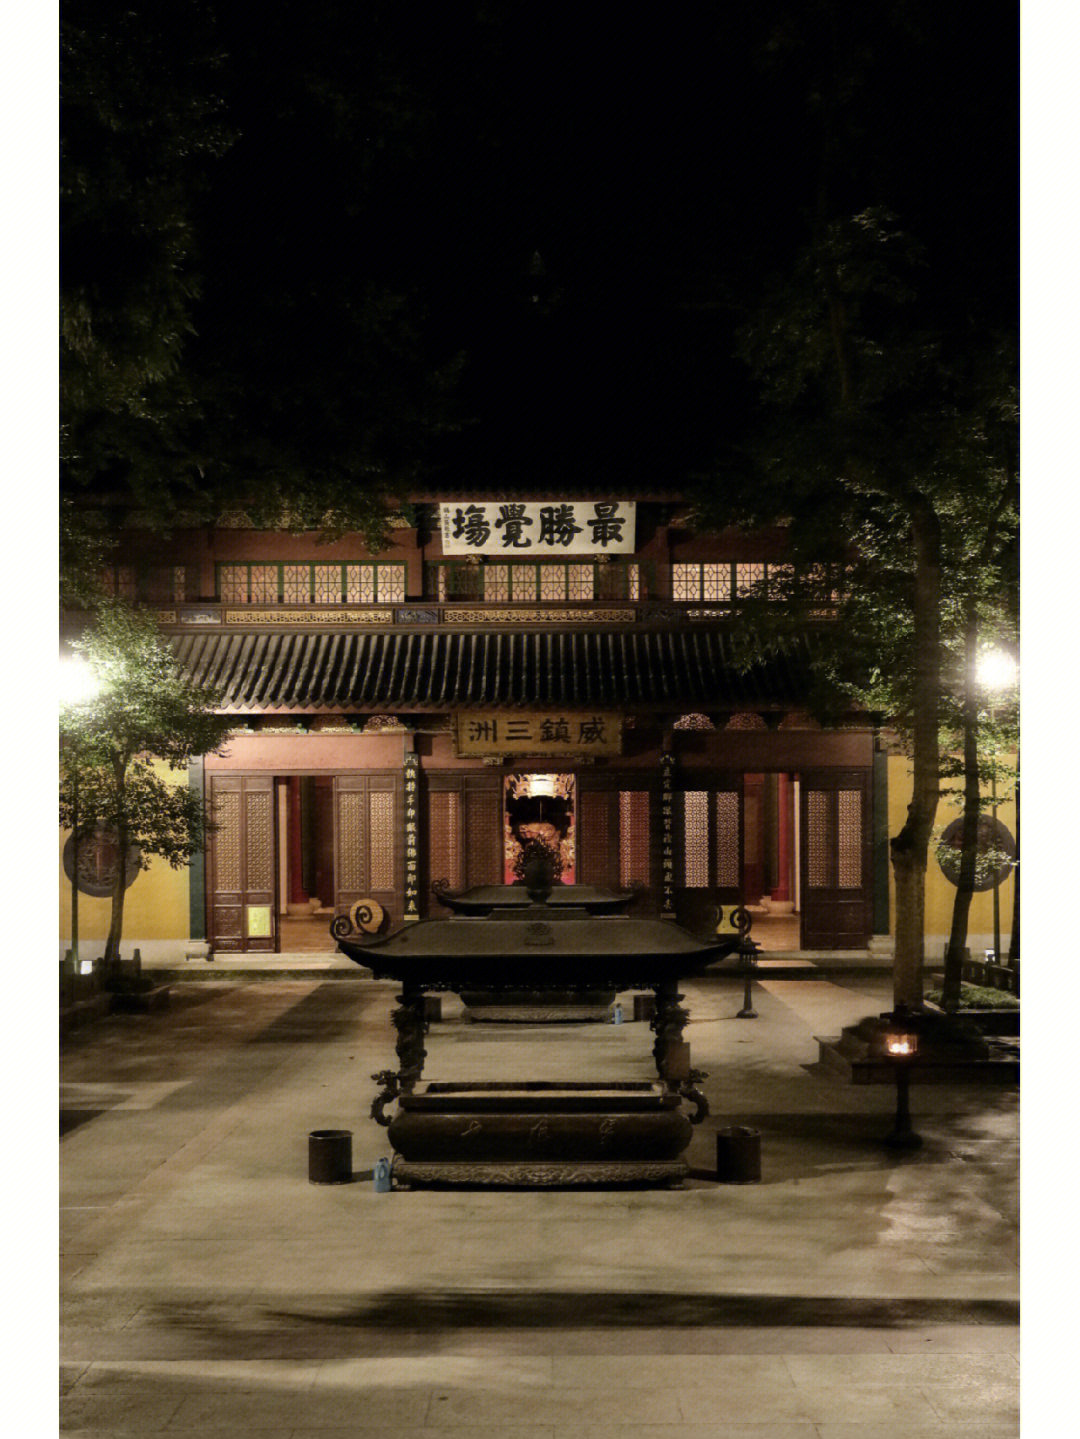 夜游杭州丨你见过空无一人的灵隐寺吗